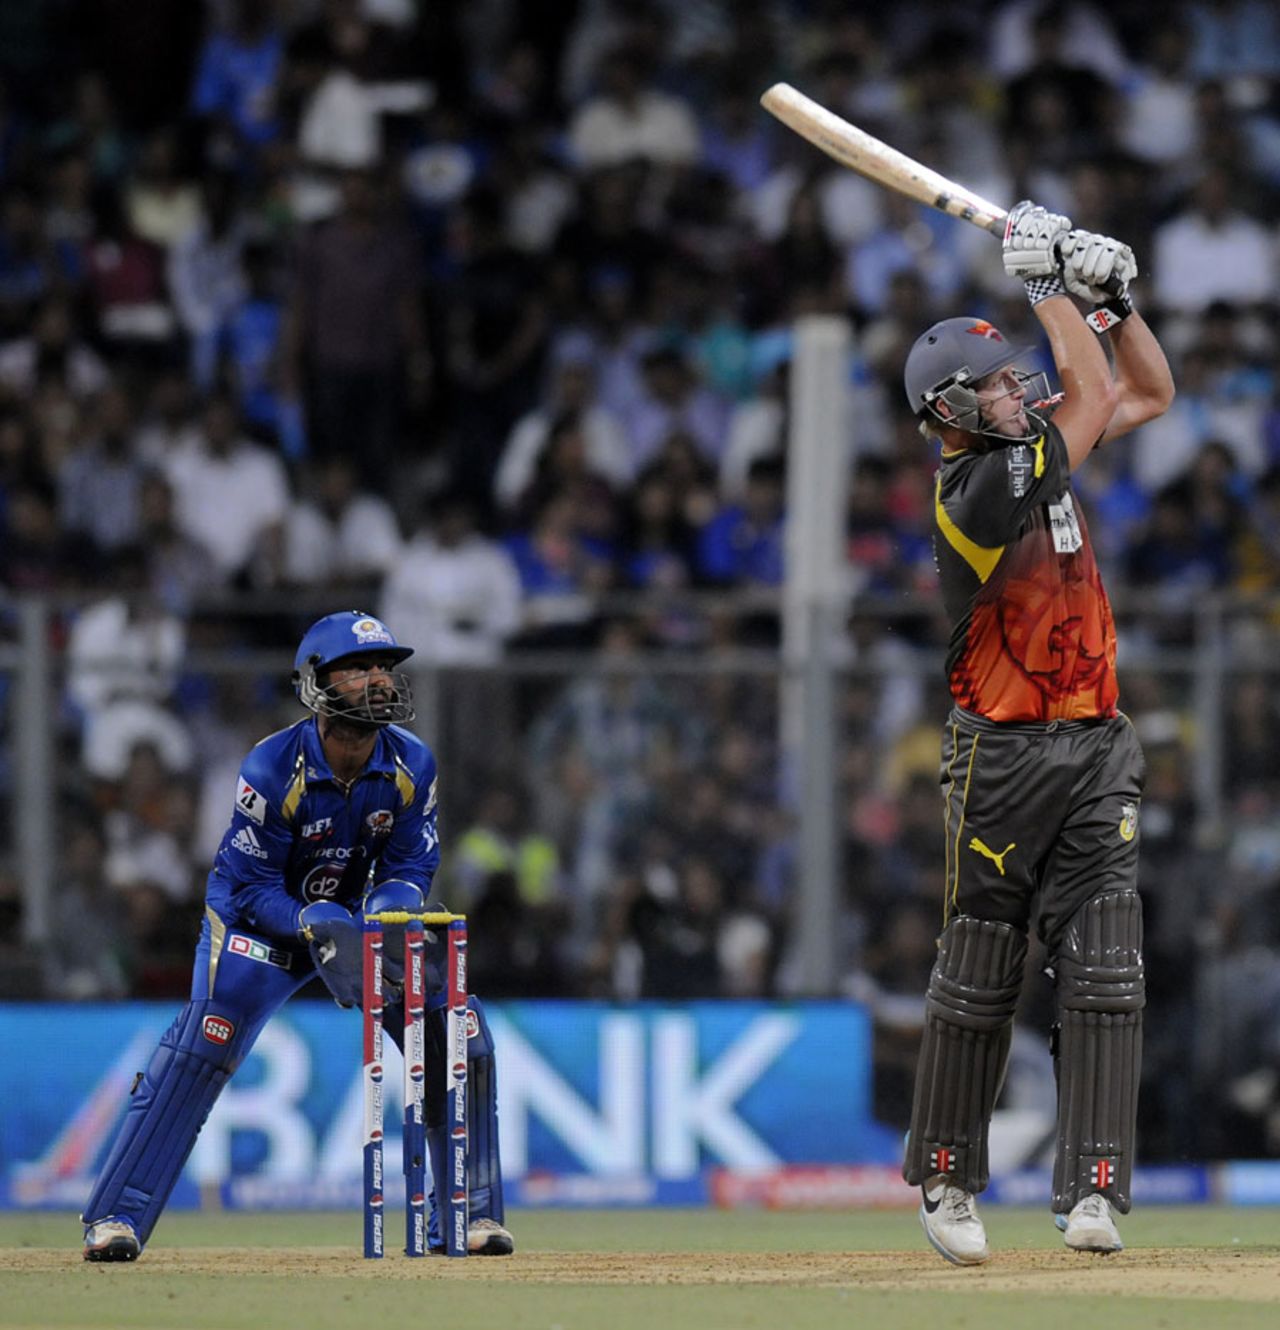 Cameron White hits a powerful shot, Mumbai Indians v Sunrisers Hyderabad, IPL 2013, Mumbai, May 13, 2013